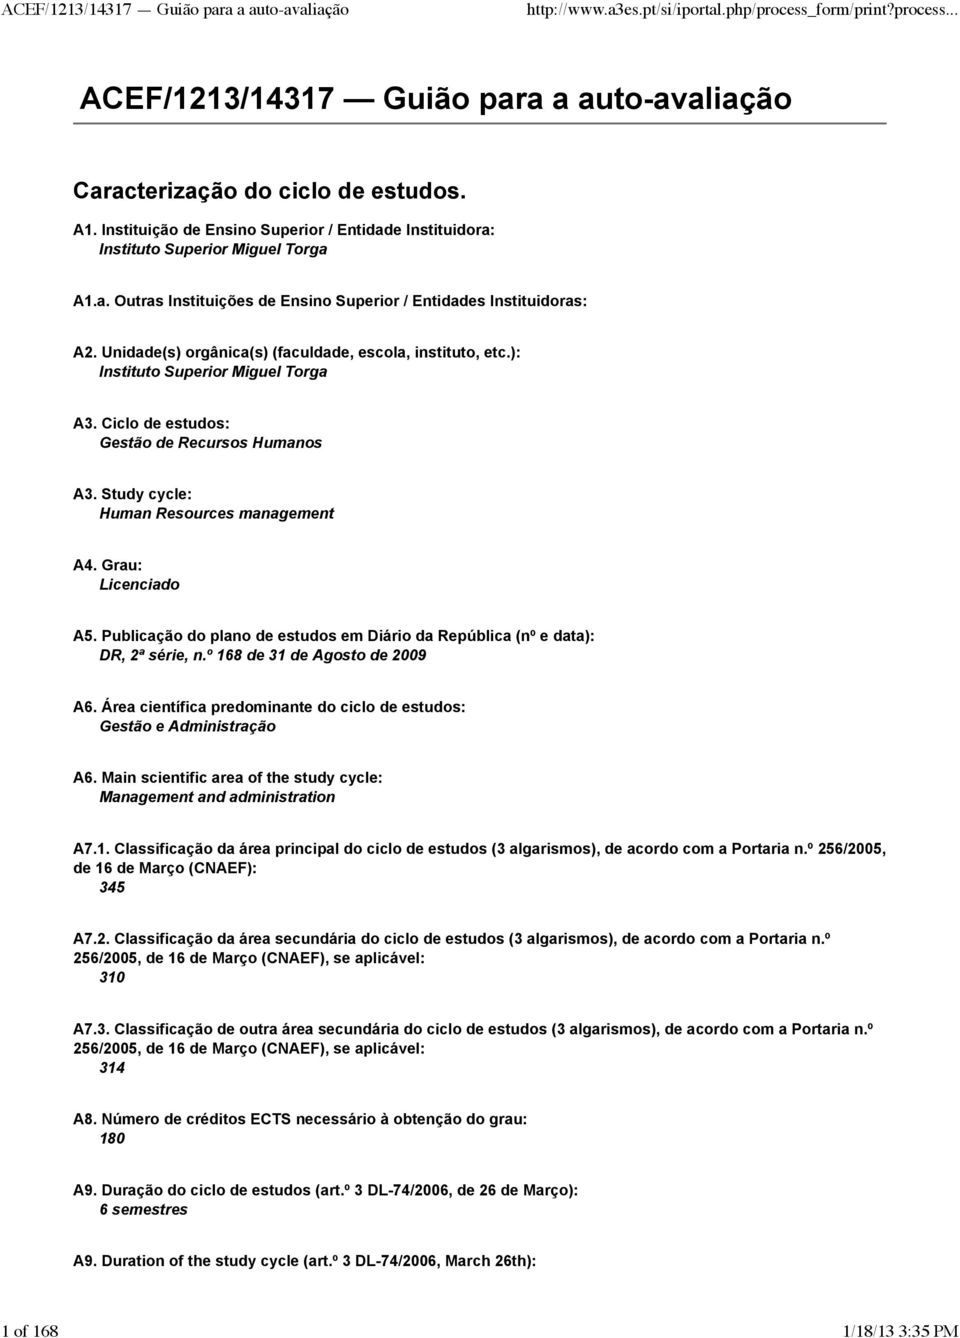 Grau: Licenciado A5. Publicação do plano de estudos em Diário da República (nº e data): DR, 2ª série, n.º 168 de 31 de Agosto de 2009 A6.